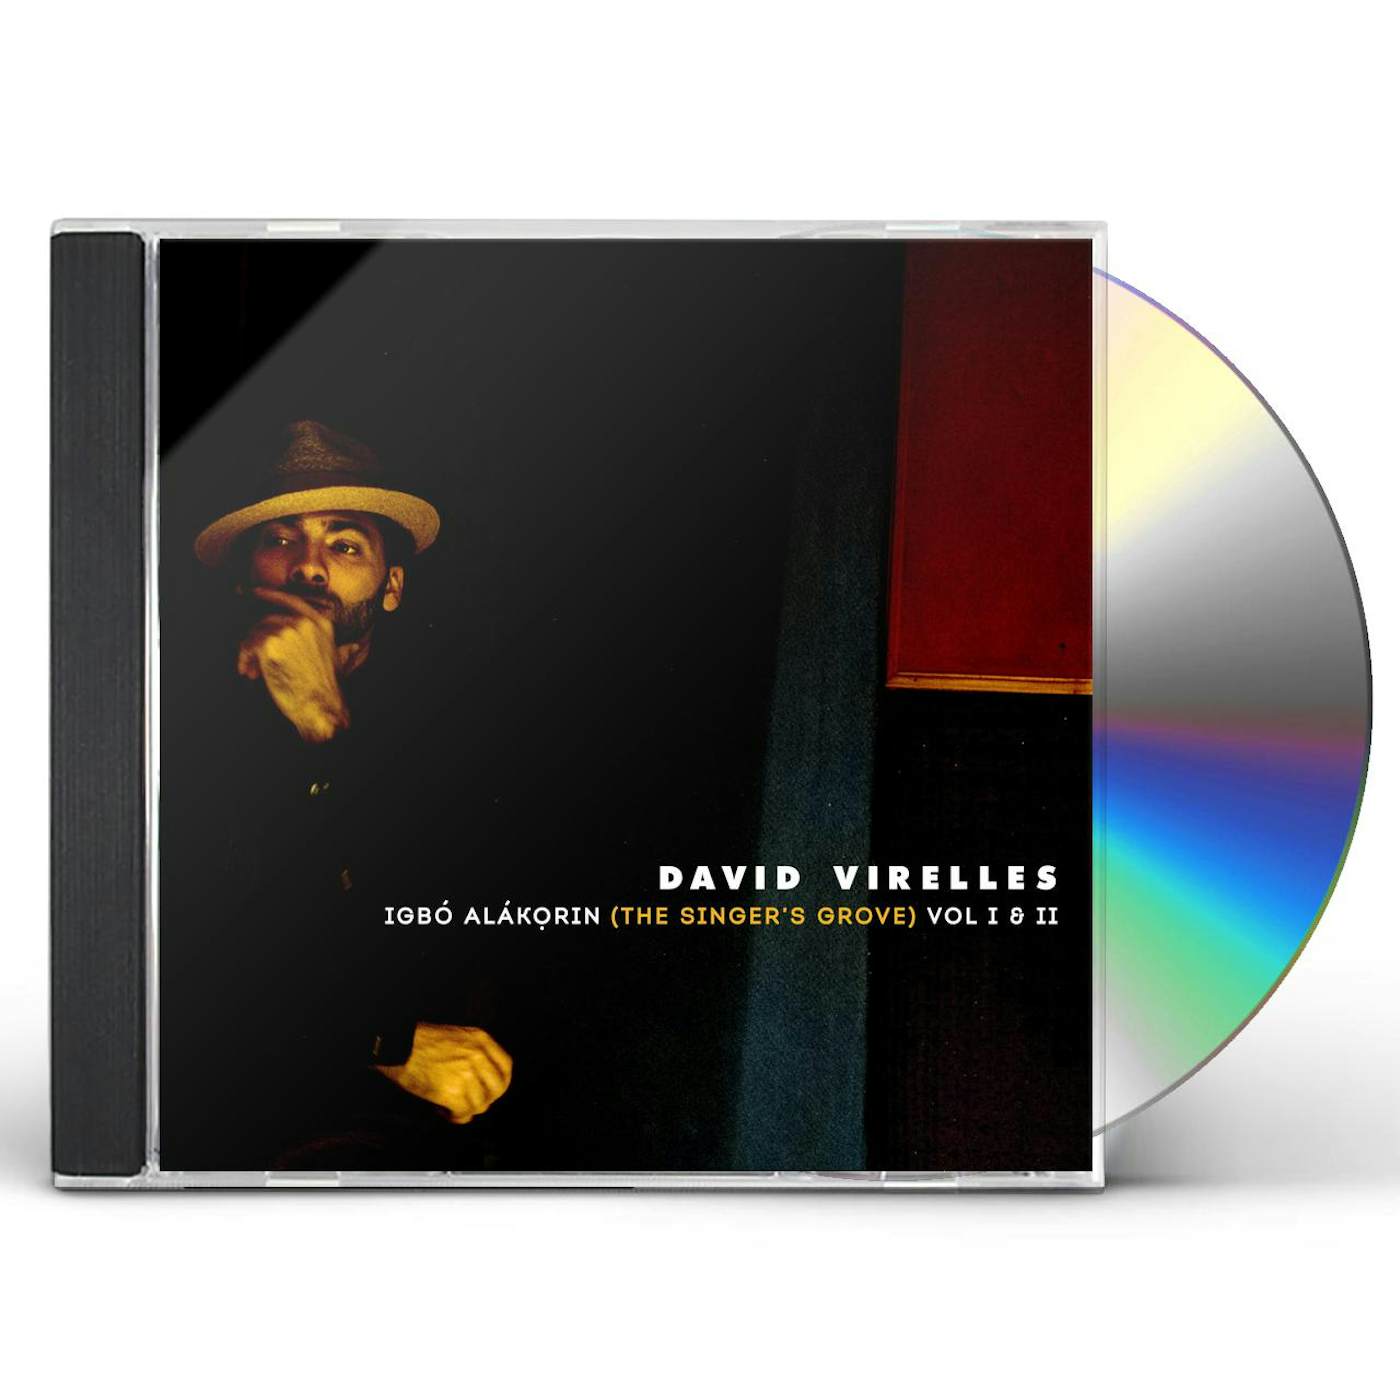 David Virelles IGBO ALAKORIN (THE SINGER'S GROVE) VOL. I & II CD